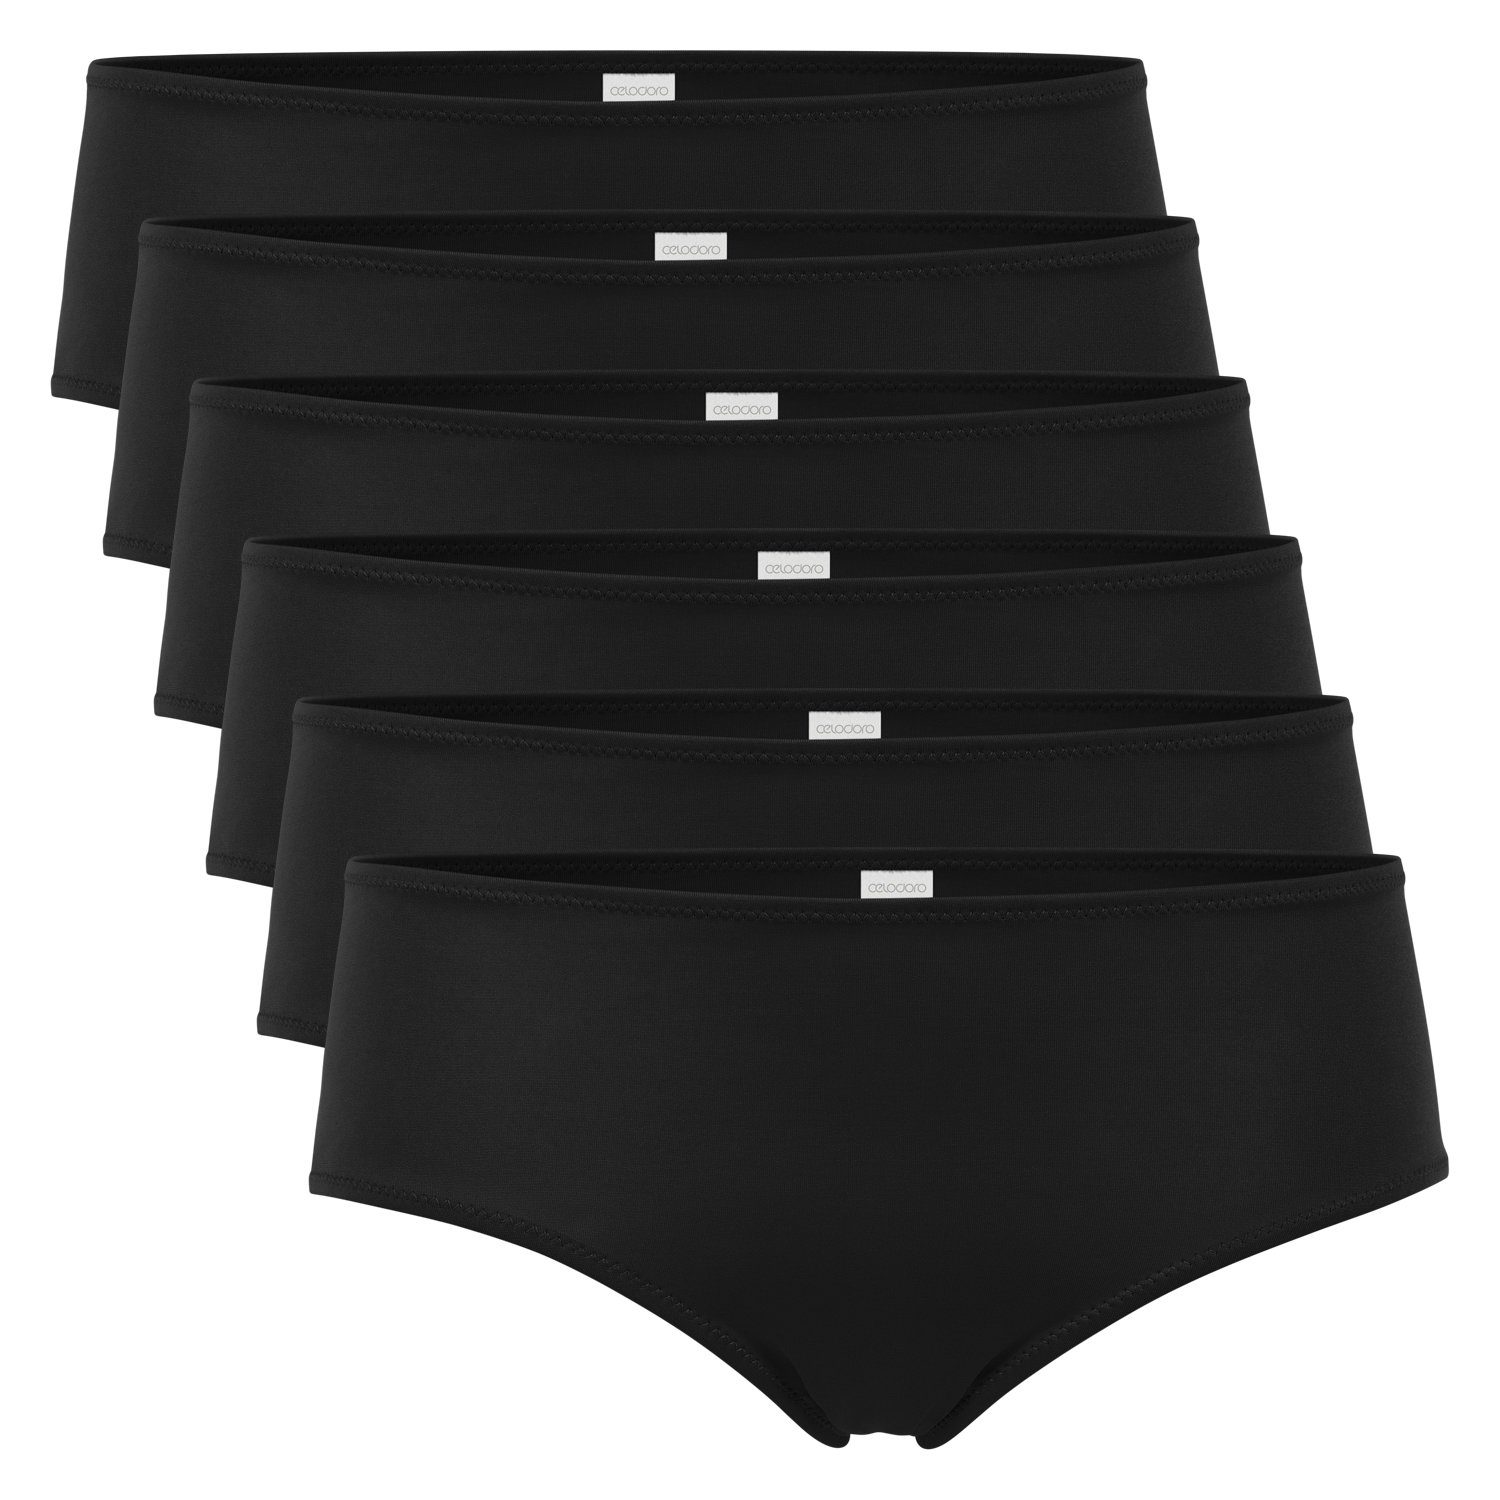 celodoro Panty Damen Panty Hipster (6er Pack) Panties aus Quick Dry-Fasern Schwarz